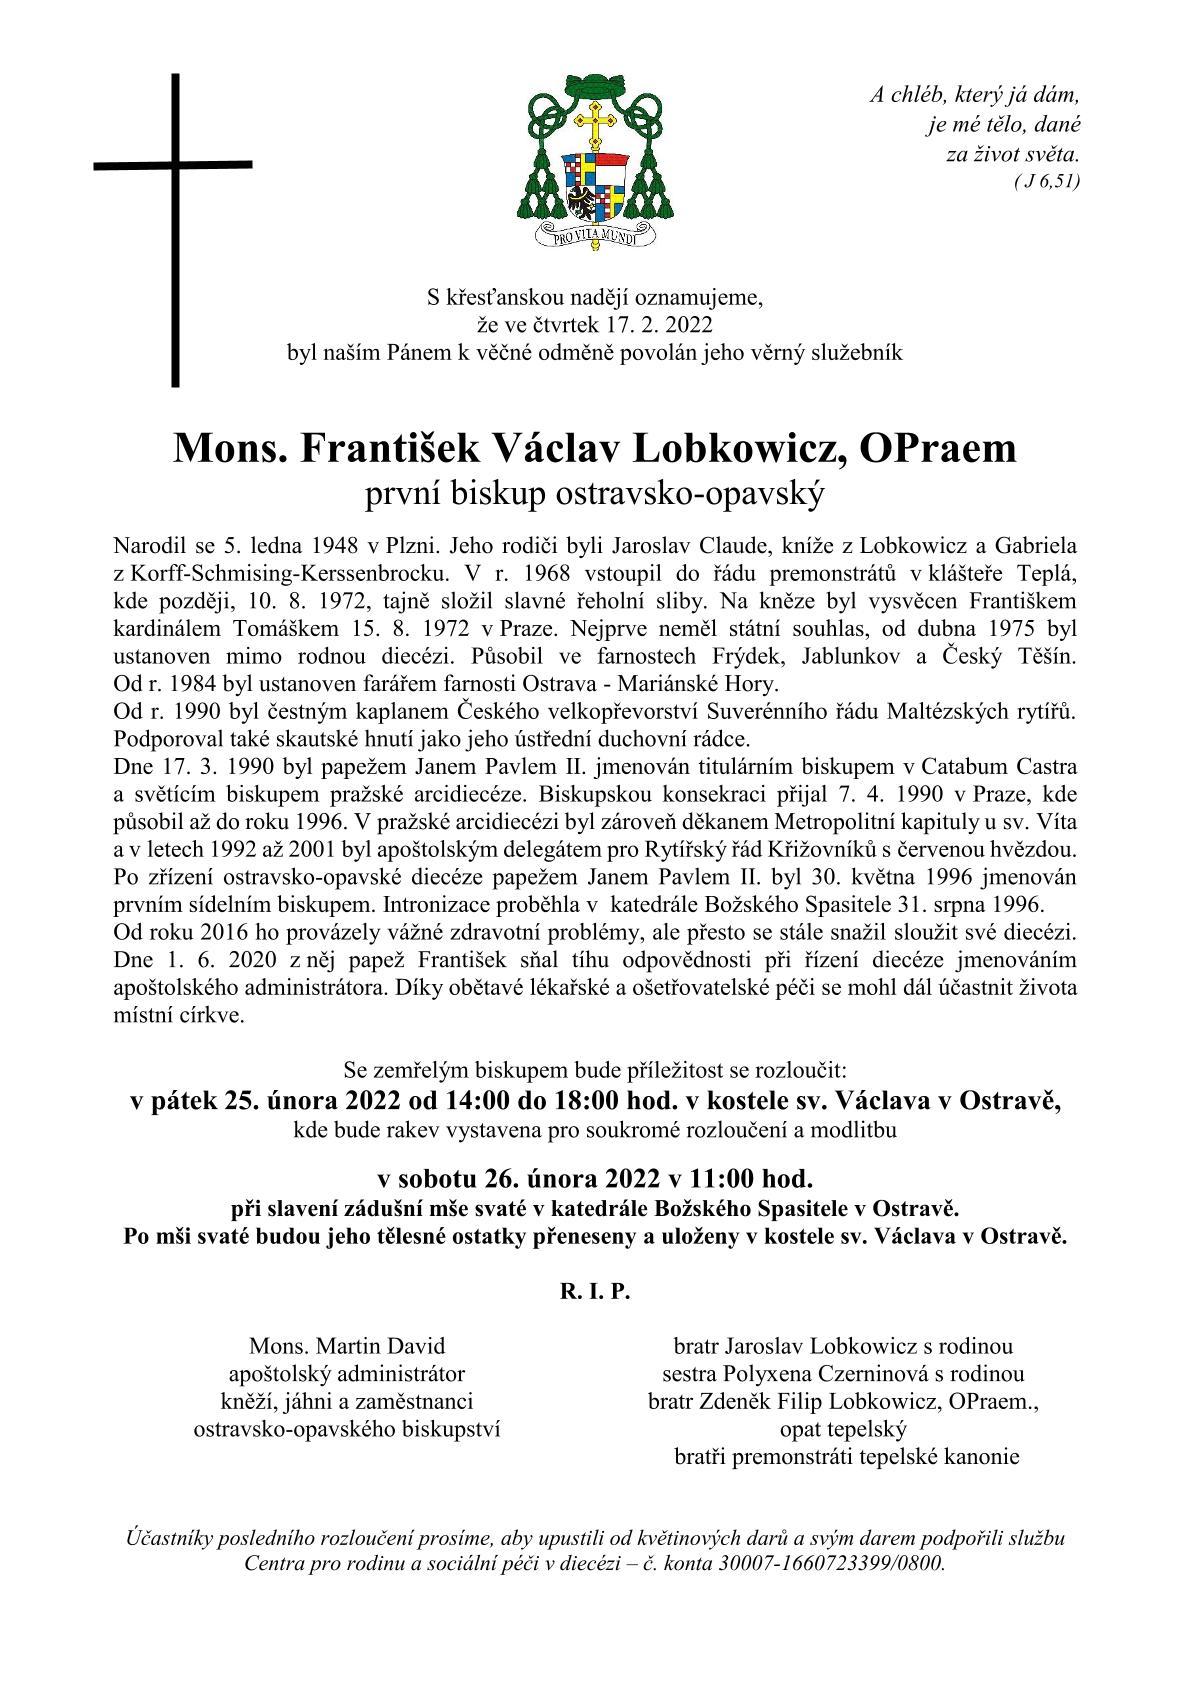 Parte biskupa Františka Václava Lobkowicze